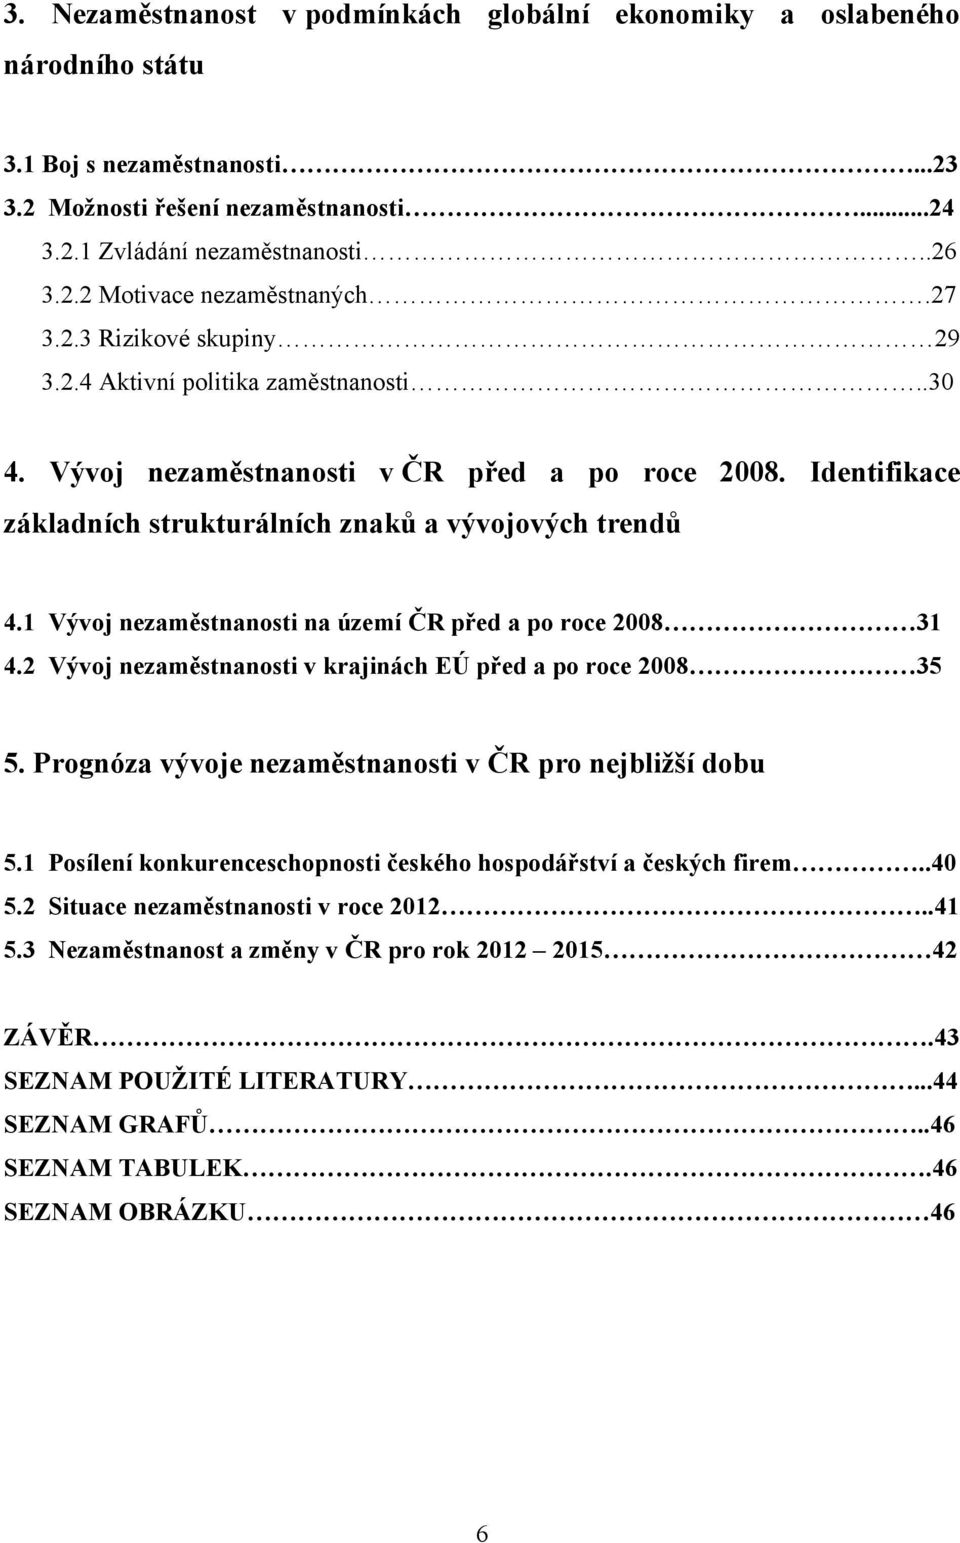 1 Vývoj nezaměstnanosti na území ČR před a po roce 2008 31 4.2 Vývoj nezaměstnanosti v krajinách EÚ před a po roce 2008 35 5. Prognóza vývoje nezaměstnanosti v ČR pro nejbliţší dobu 5.